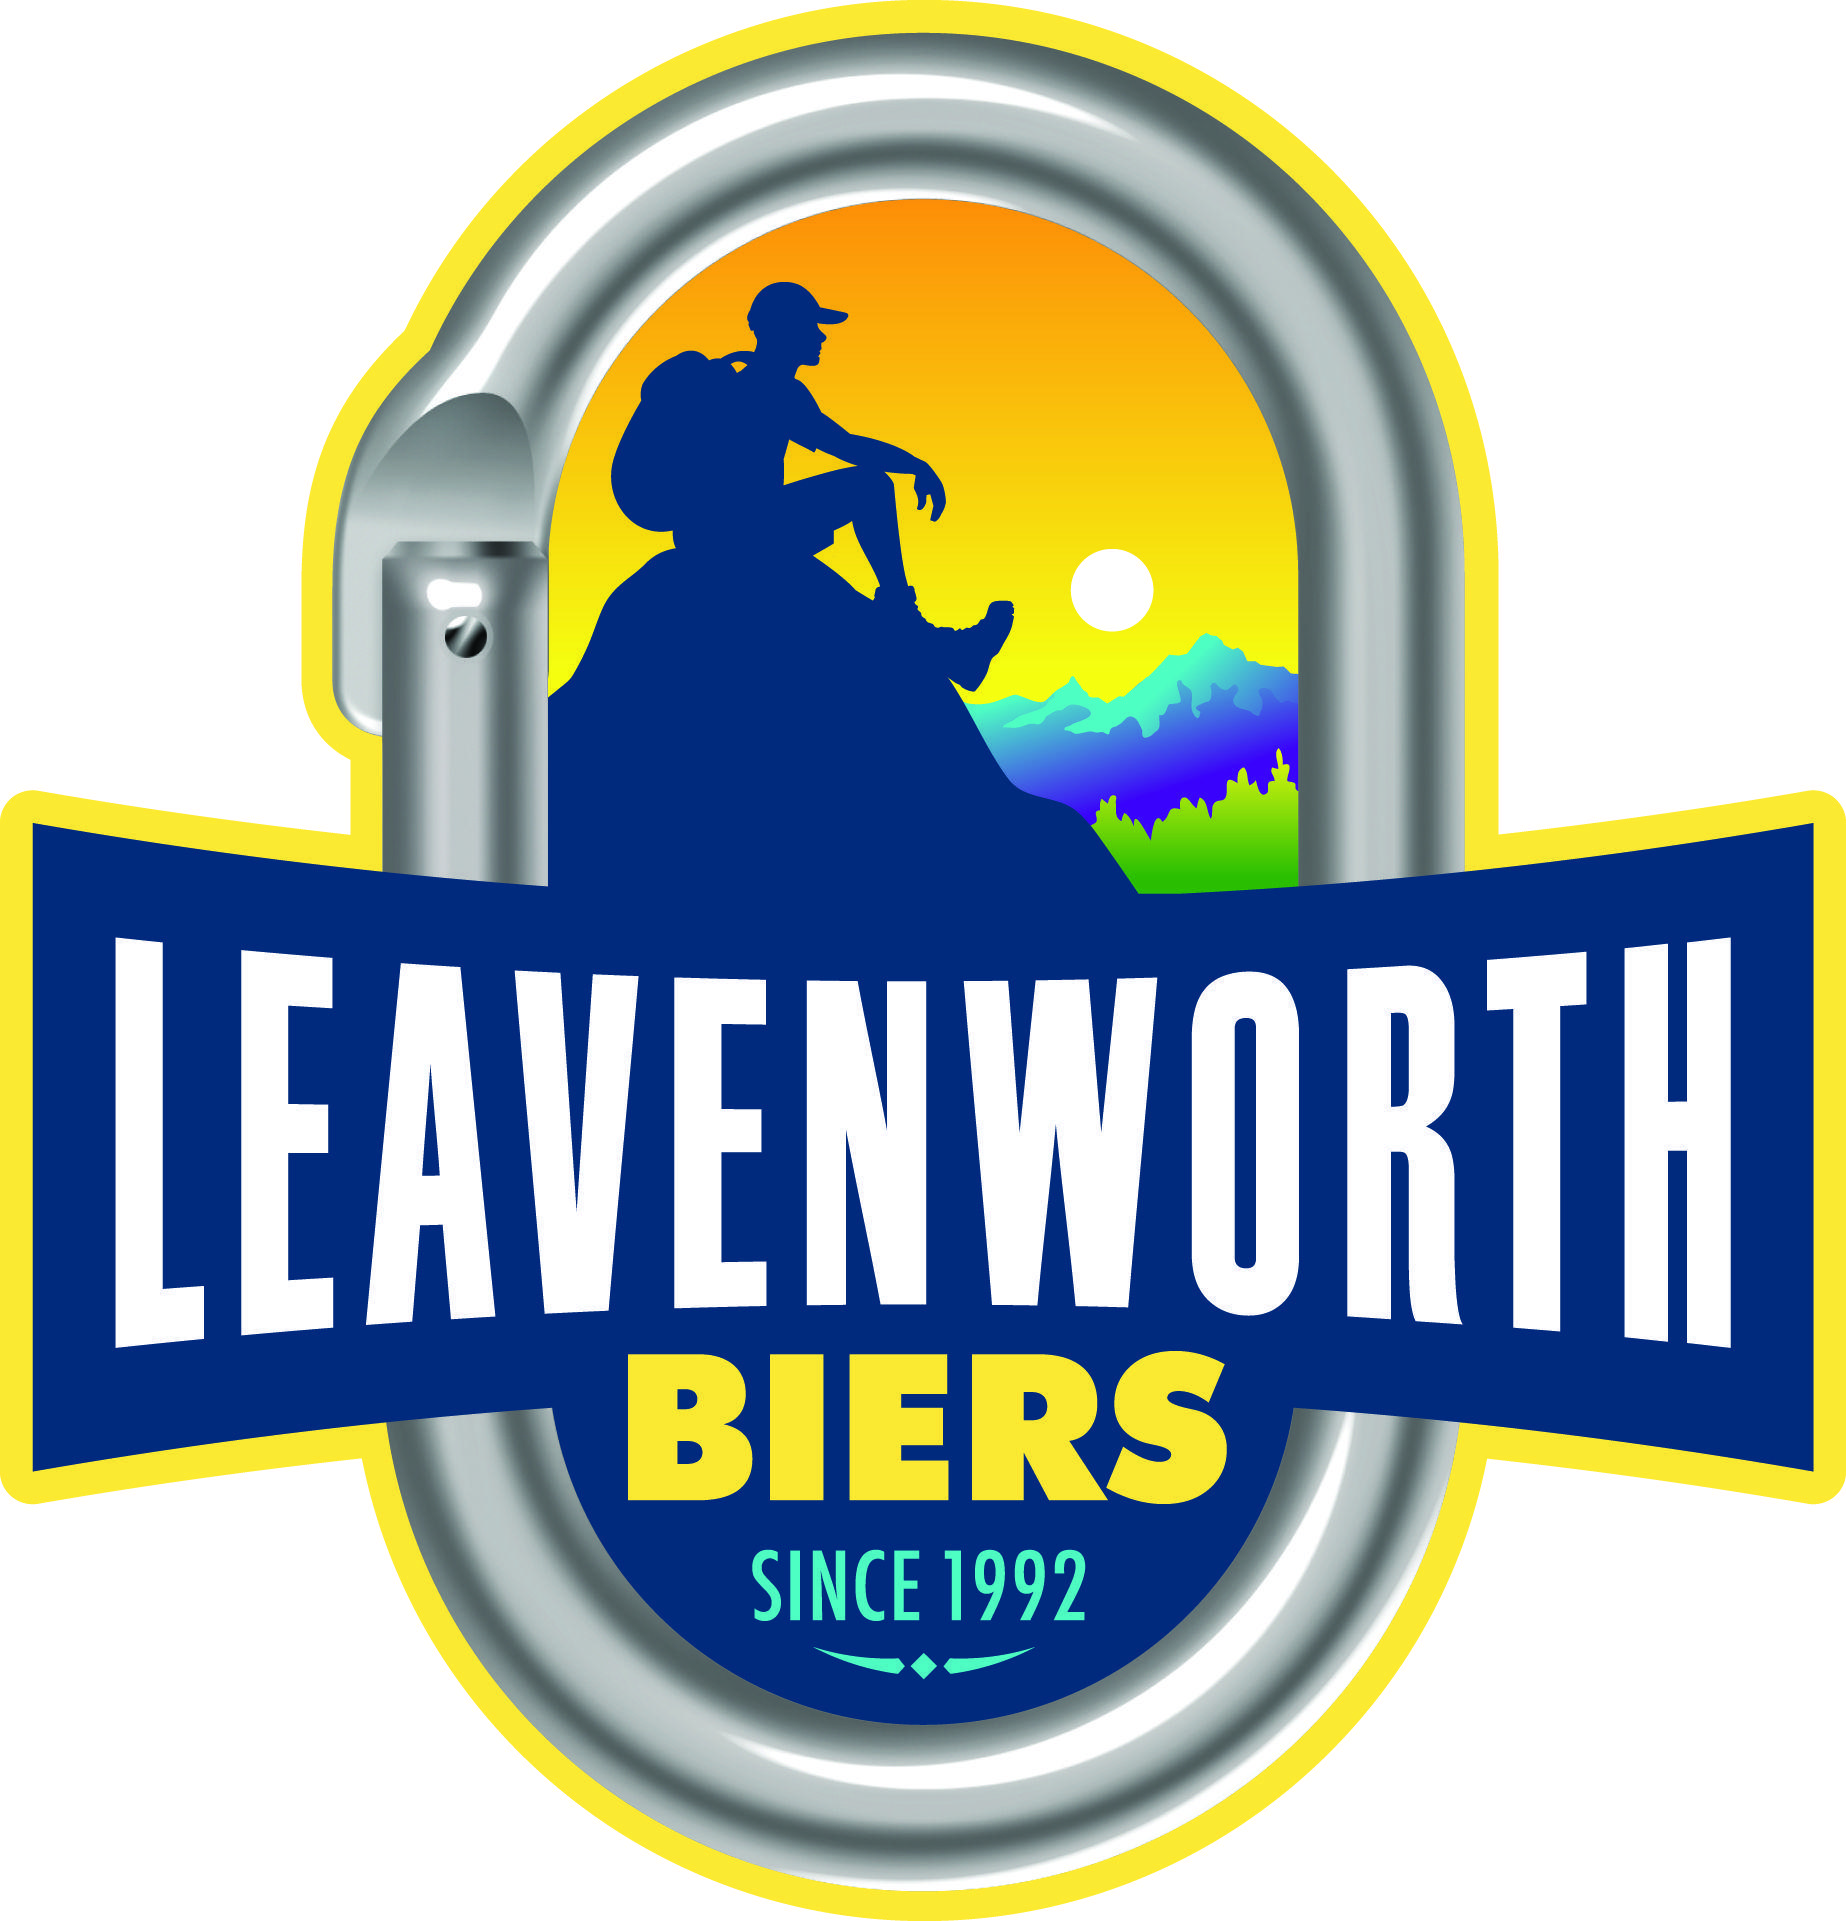 Leavenworth Logo - Index of /pos/Beer/Leavenworth Biers